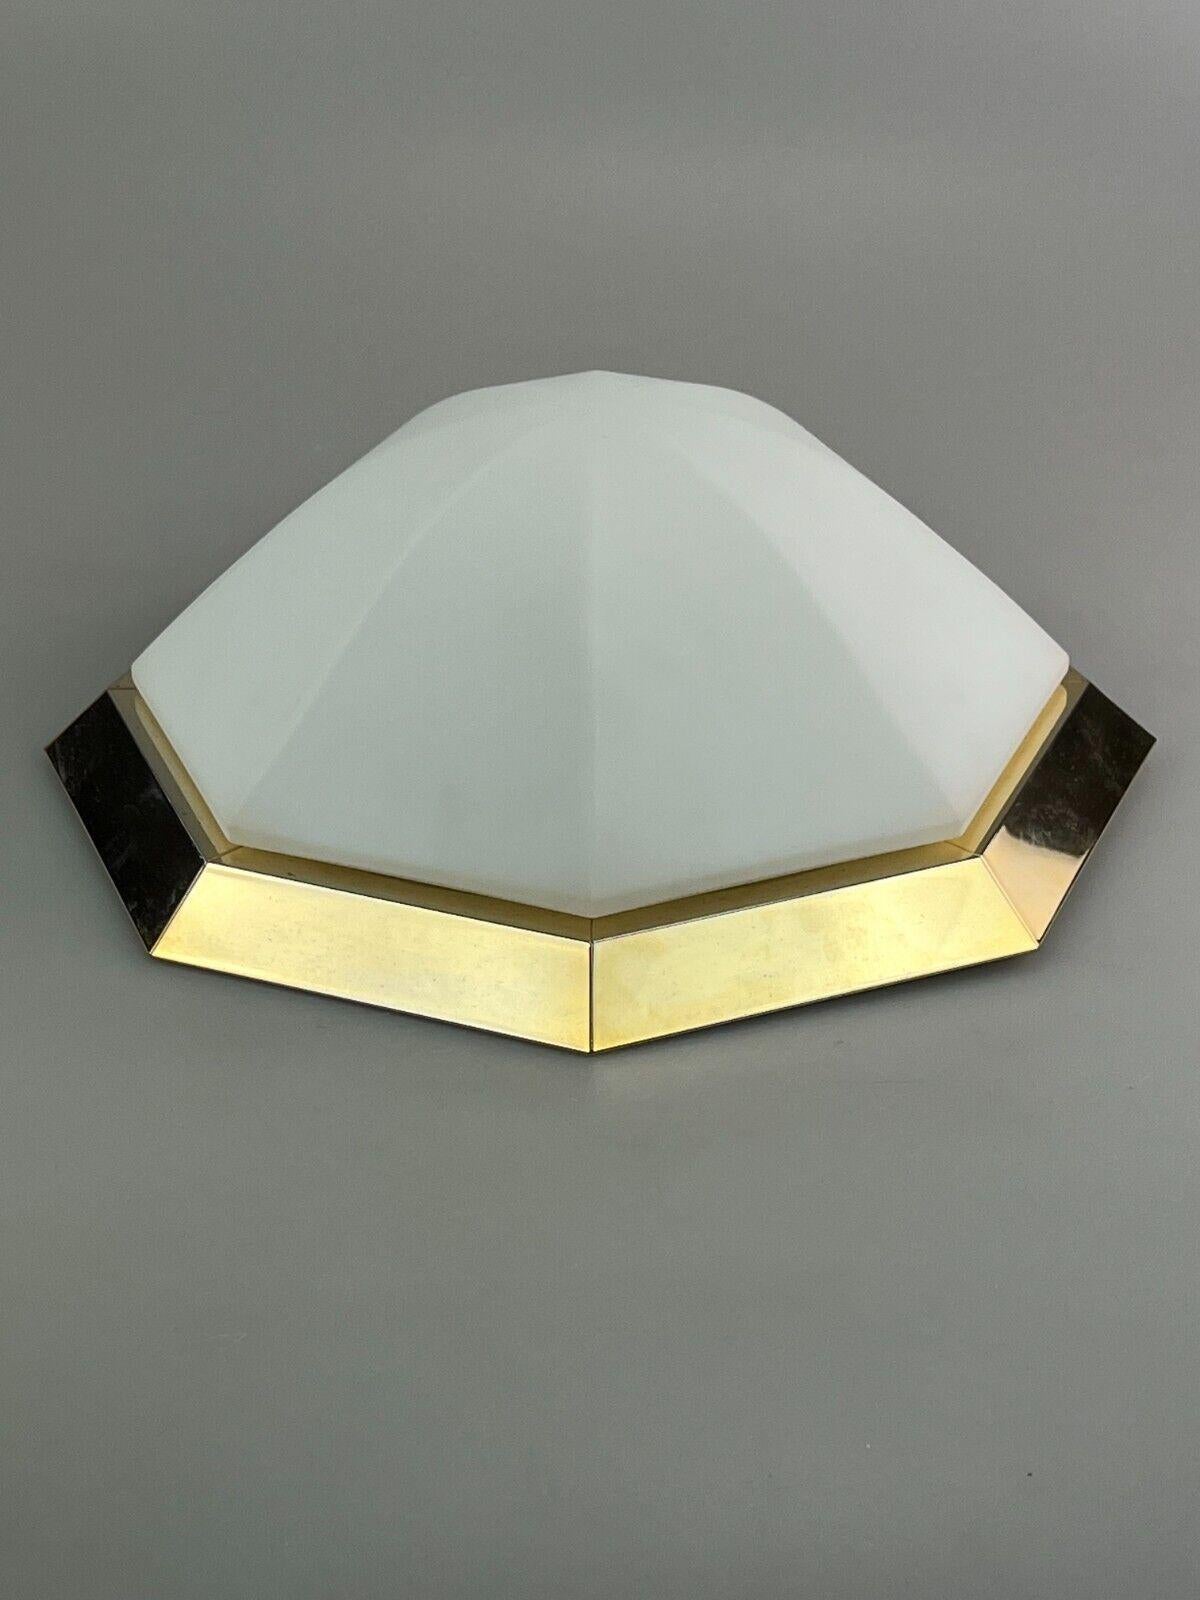 German 60s 70s Limburg Glashütte Plafoniere Ceiling Lamp Glass Space Design Lamp For Sale